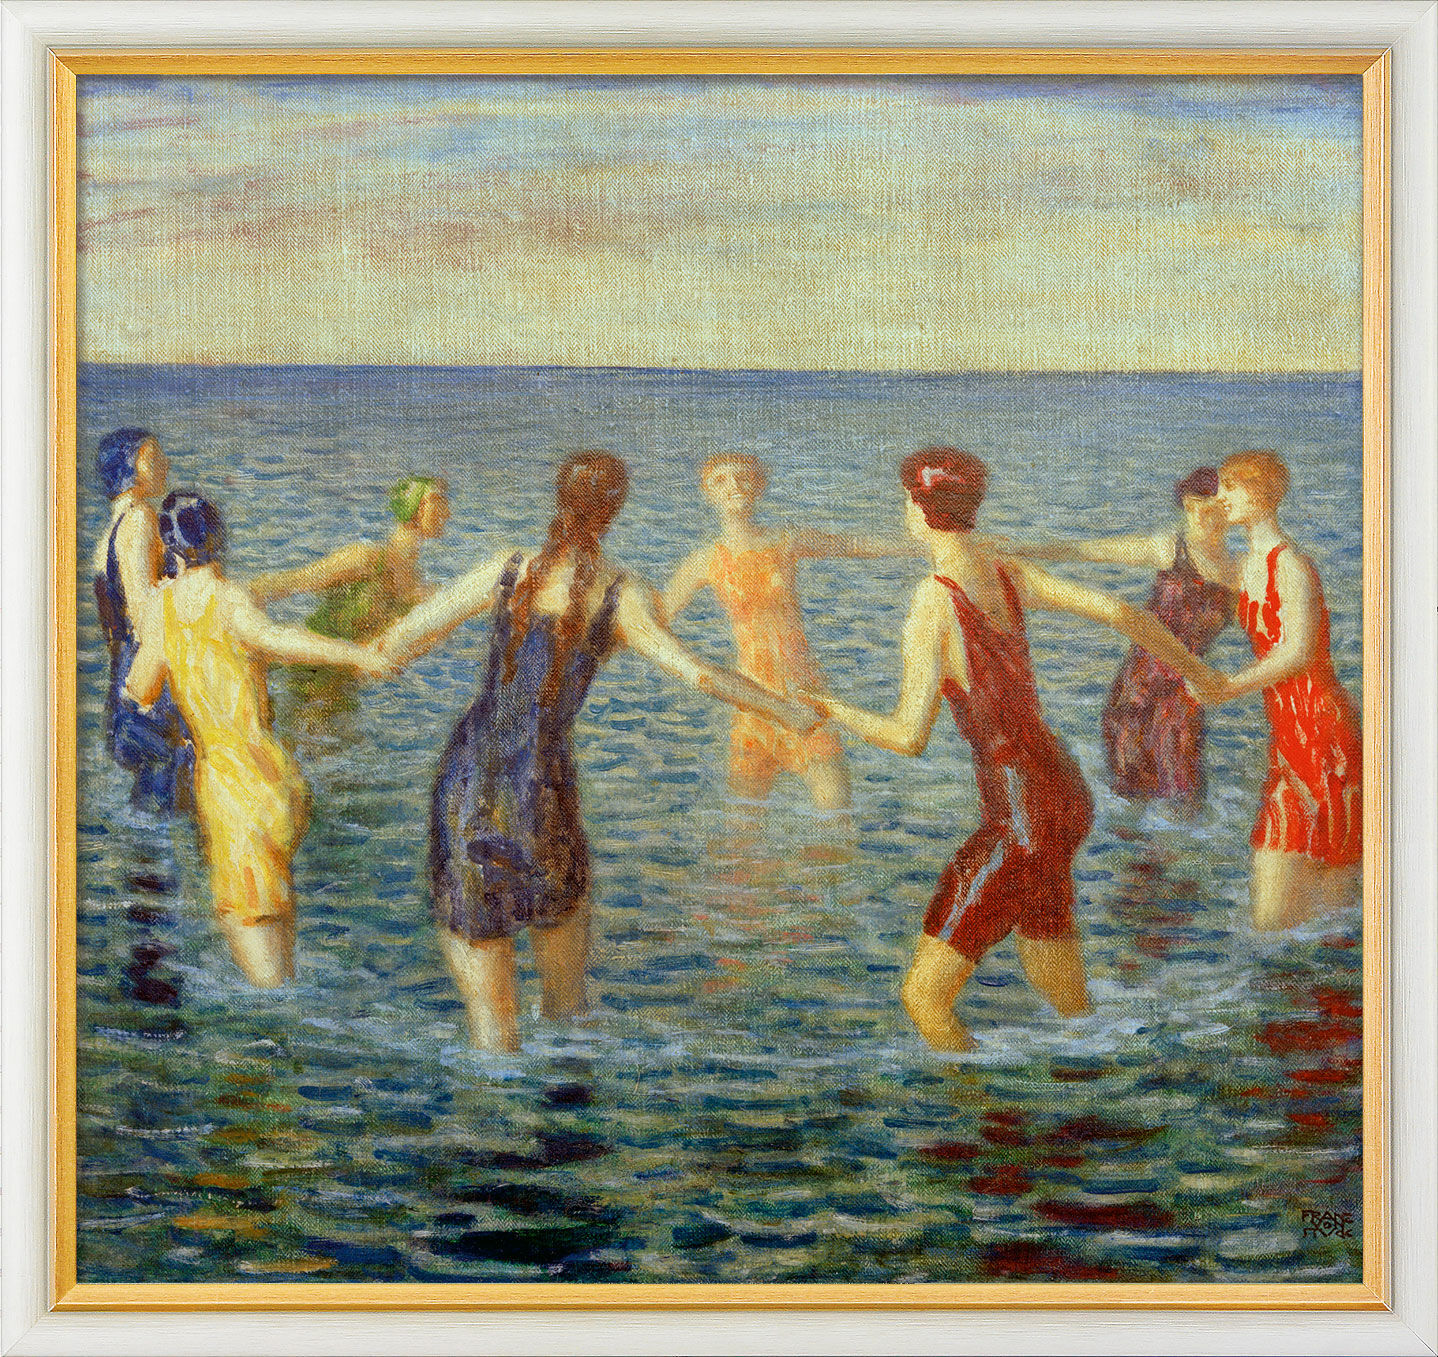 Tableau "Femmes au bain" (c. 1920), encadré von Franz von Stuck